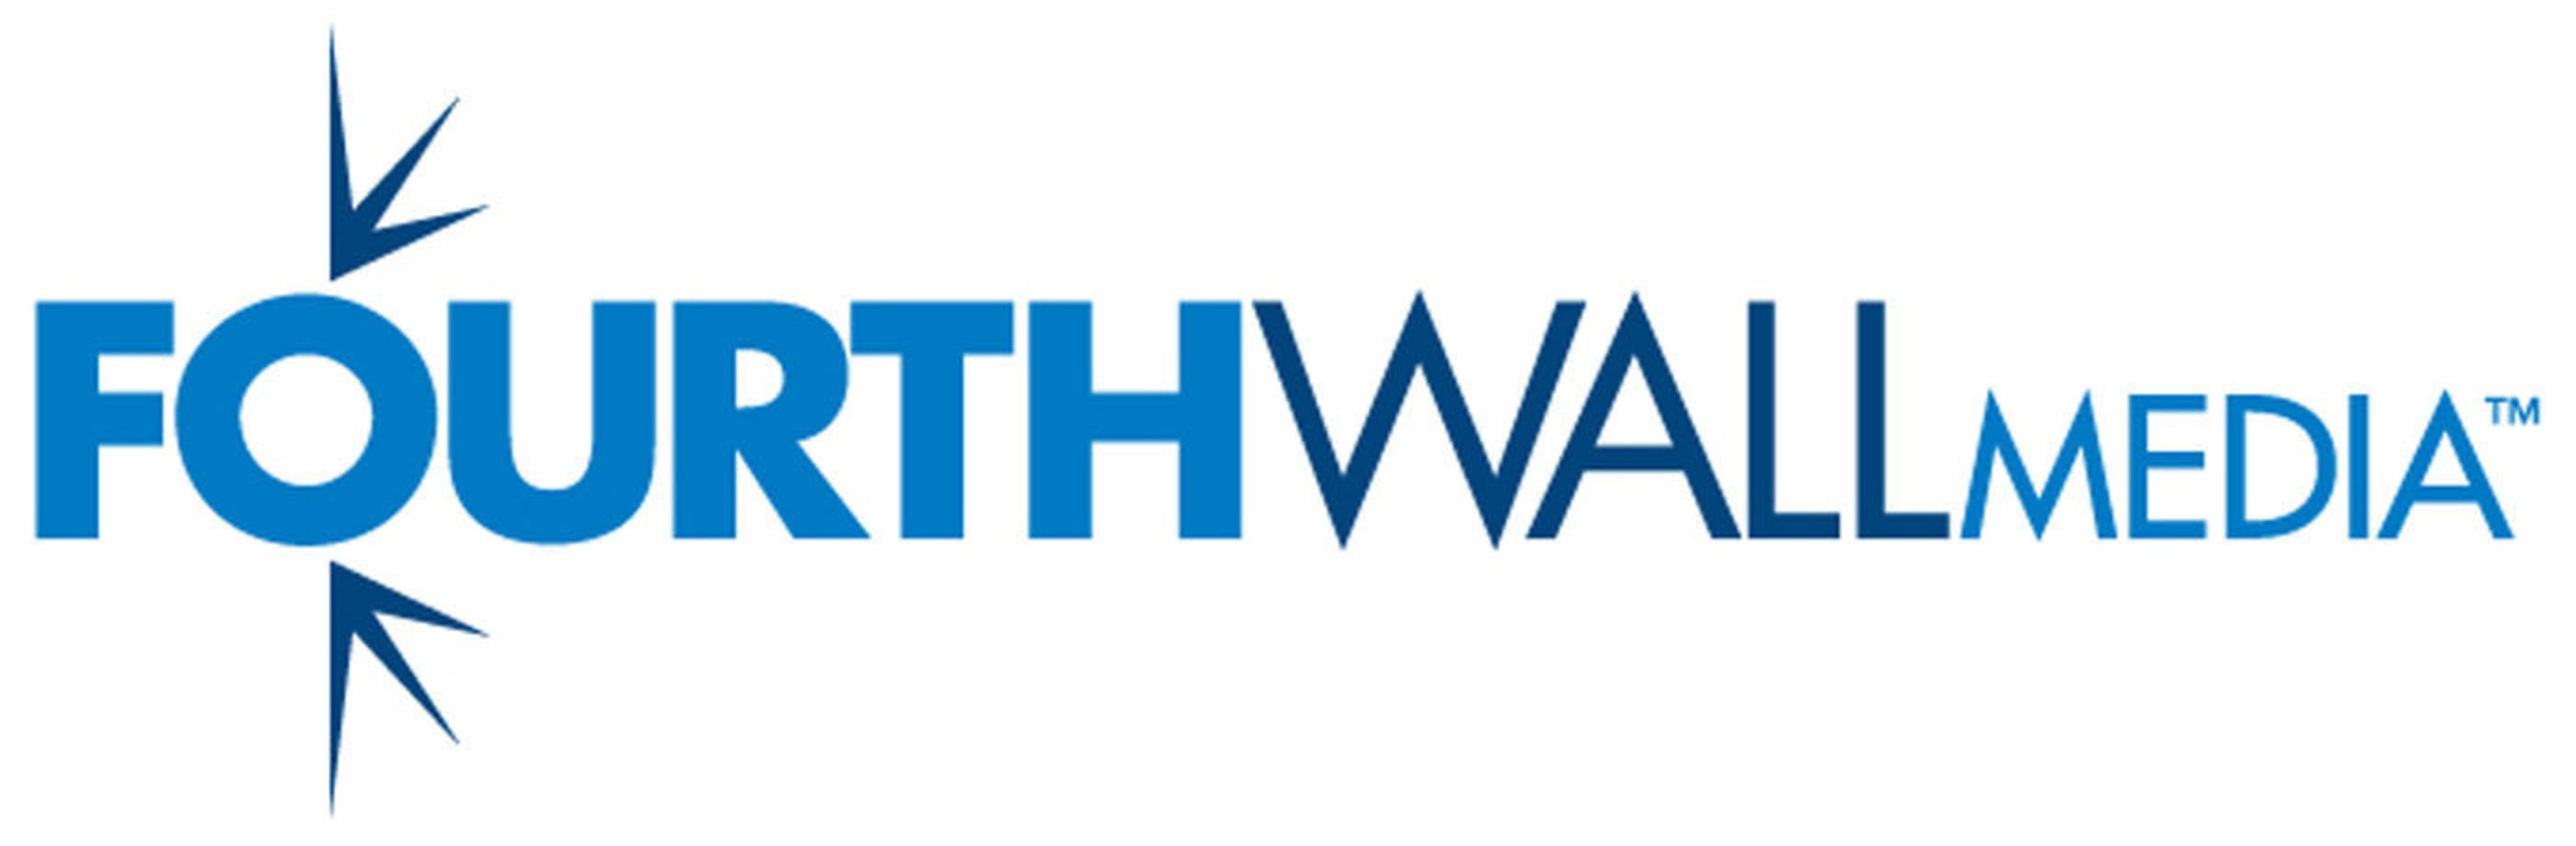 FourthWall Media Logo. (PRNewsFoto/FourthWall Media) (PRNewsFoto/)